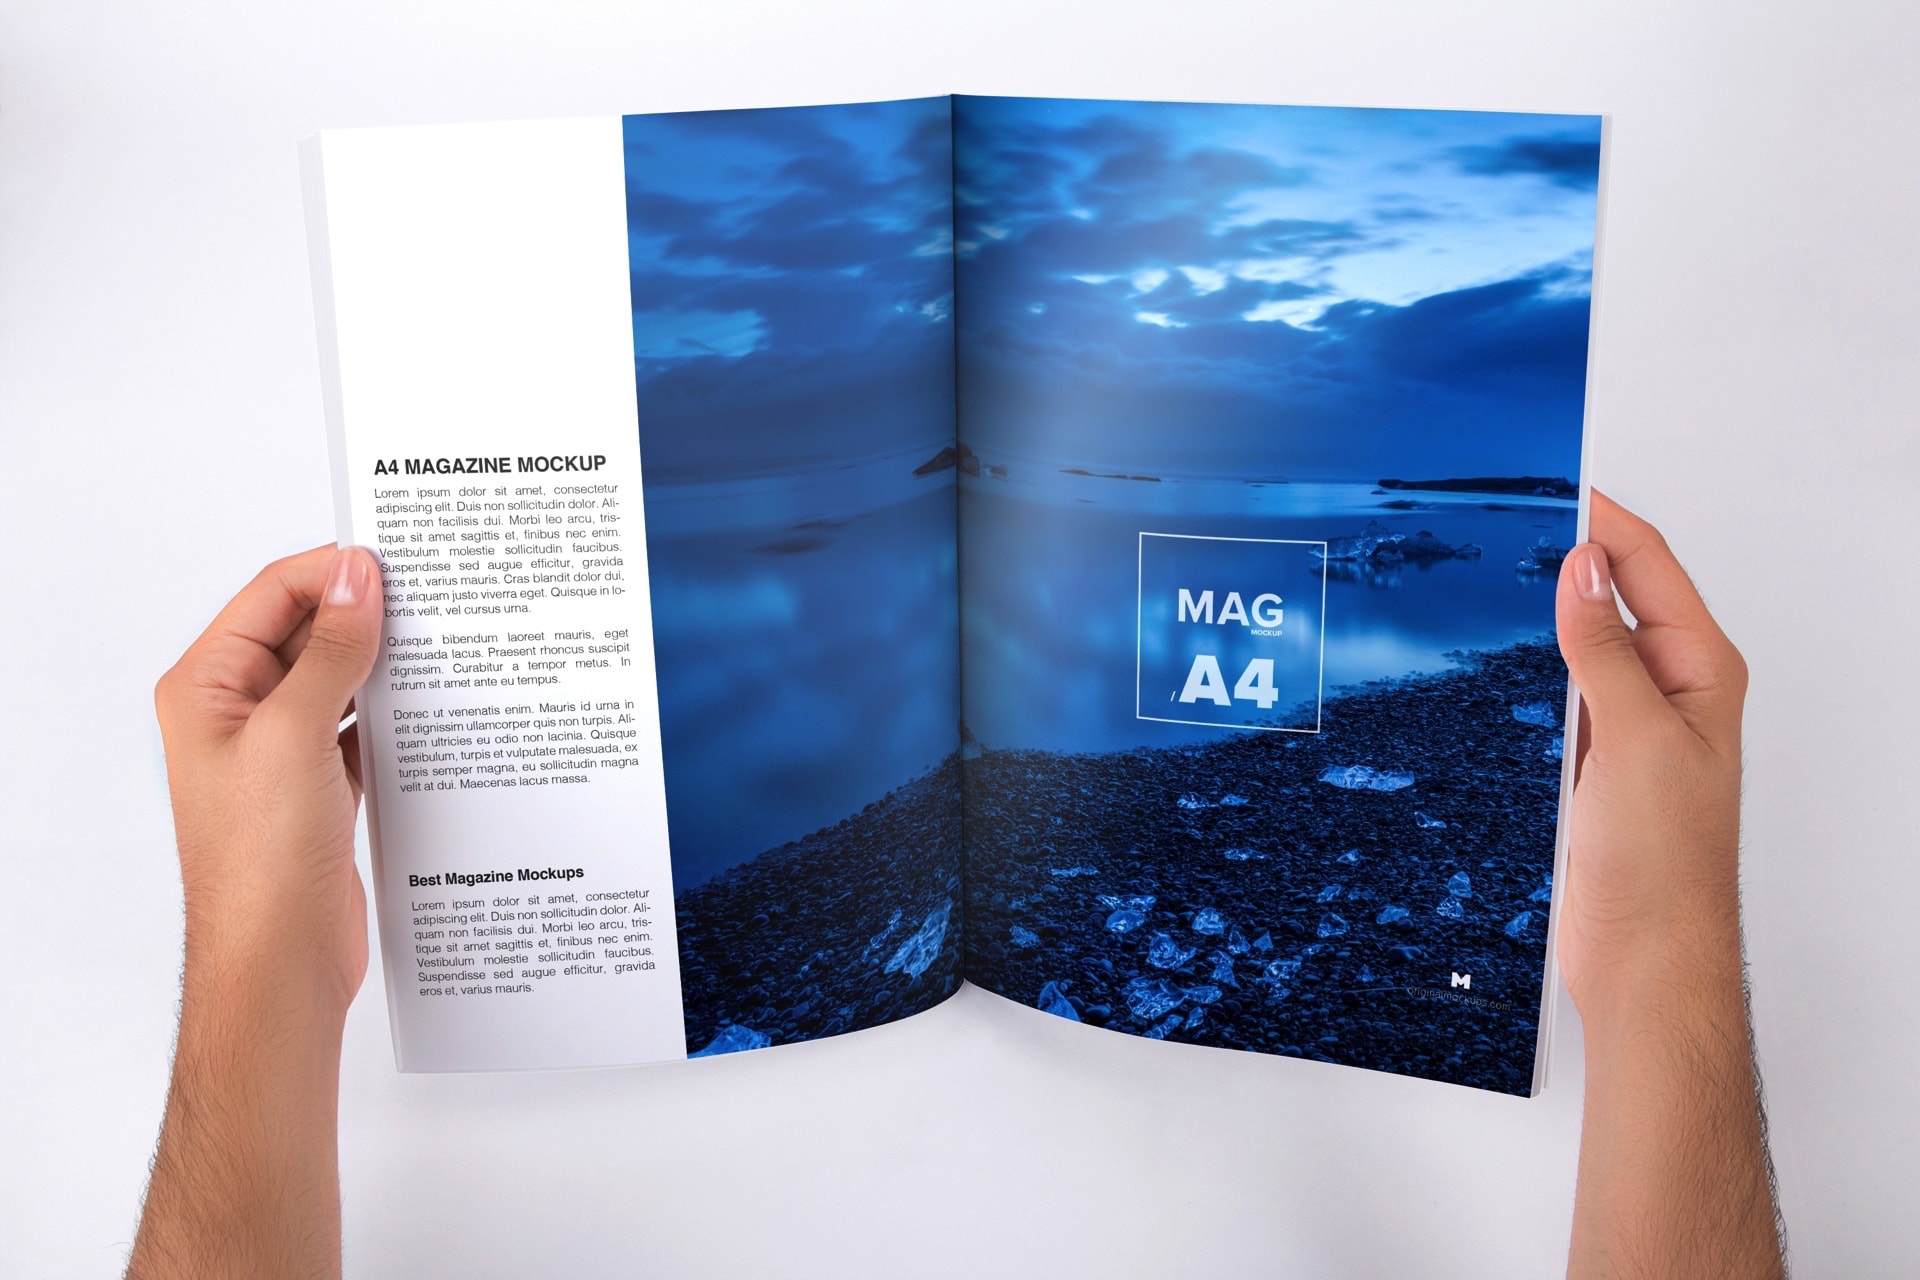 手持A4大小杂志内页版式设计打开效果图样机 Holding A4 Magazine Opened Mockup插图